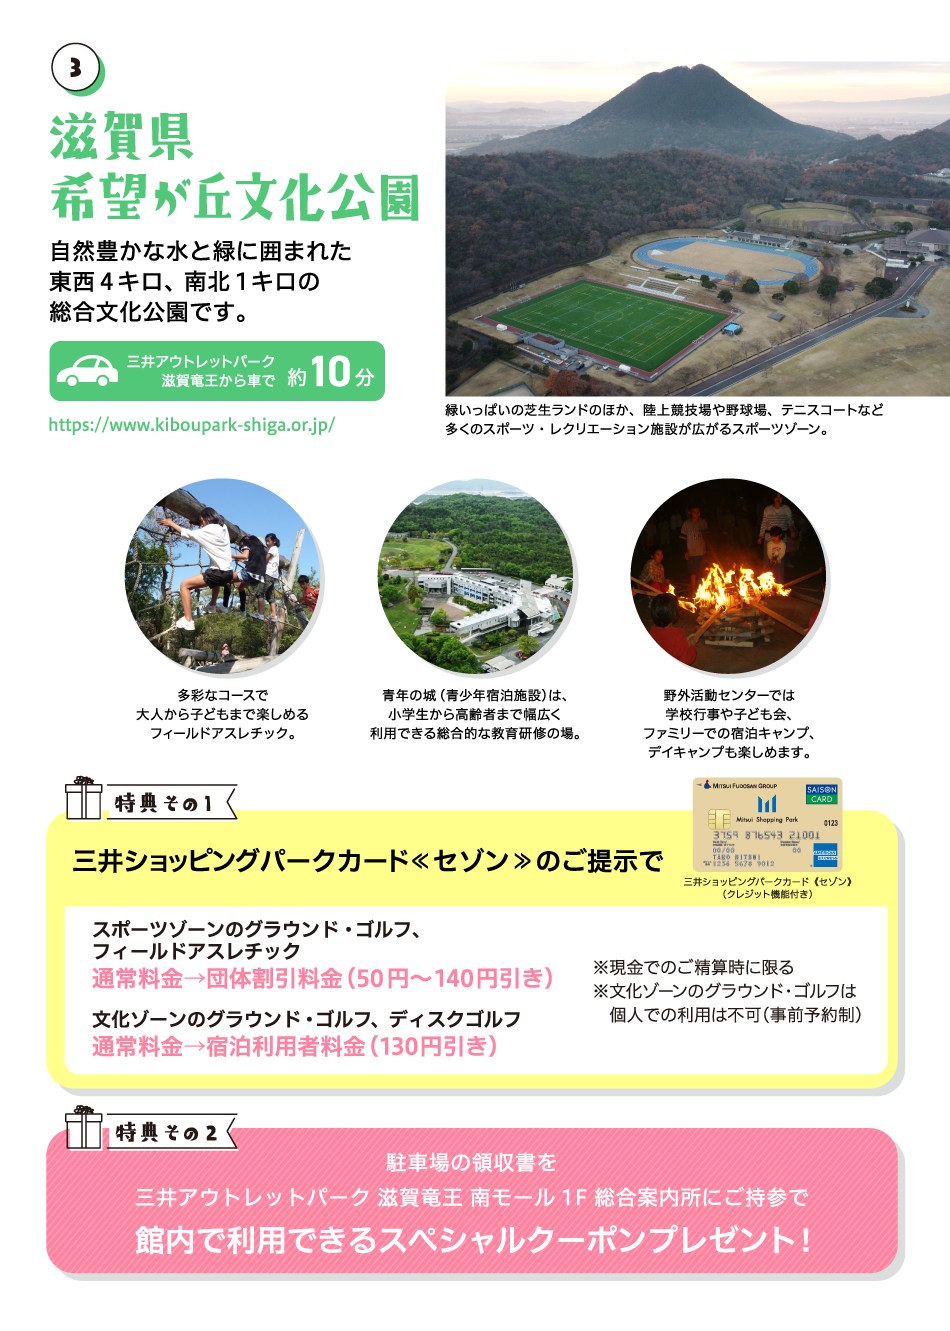 滋賀県 希望が丘文化公園